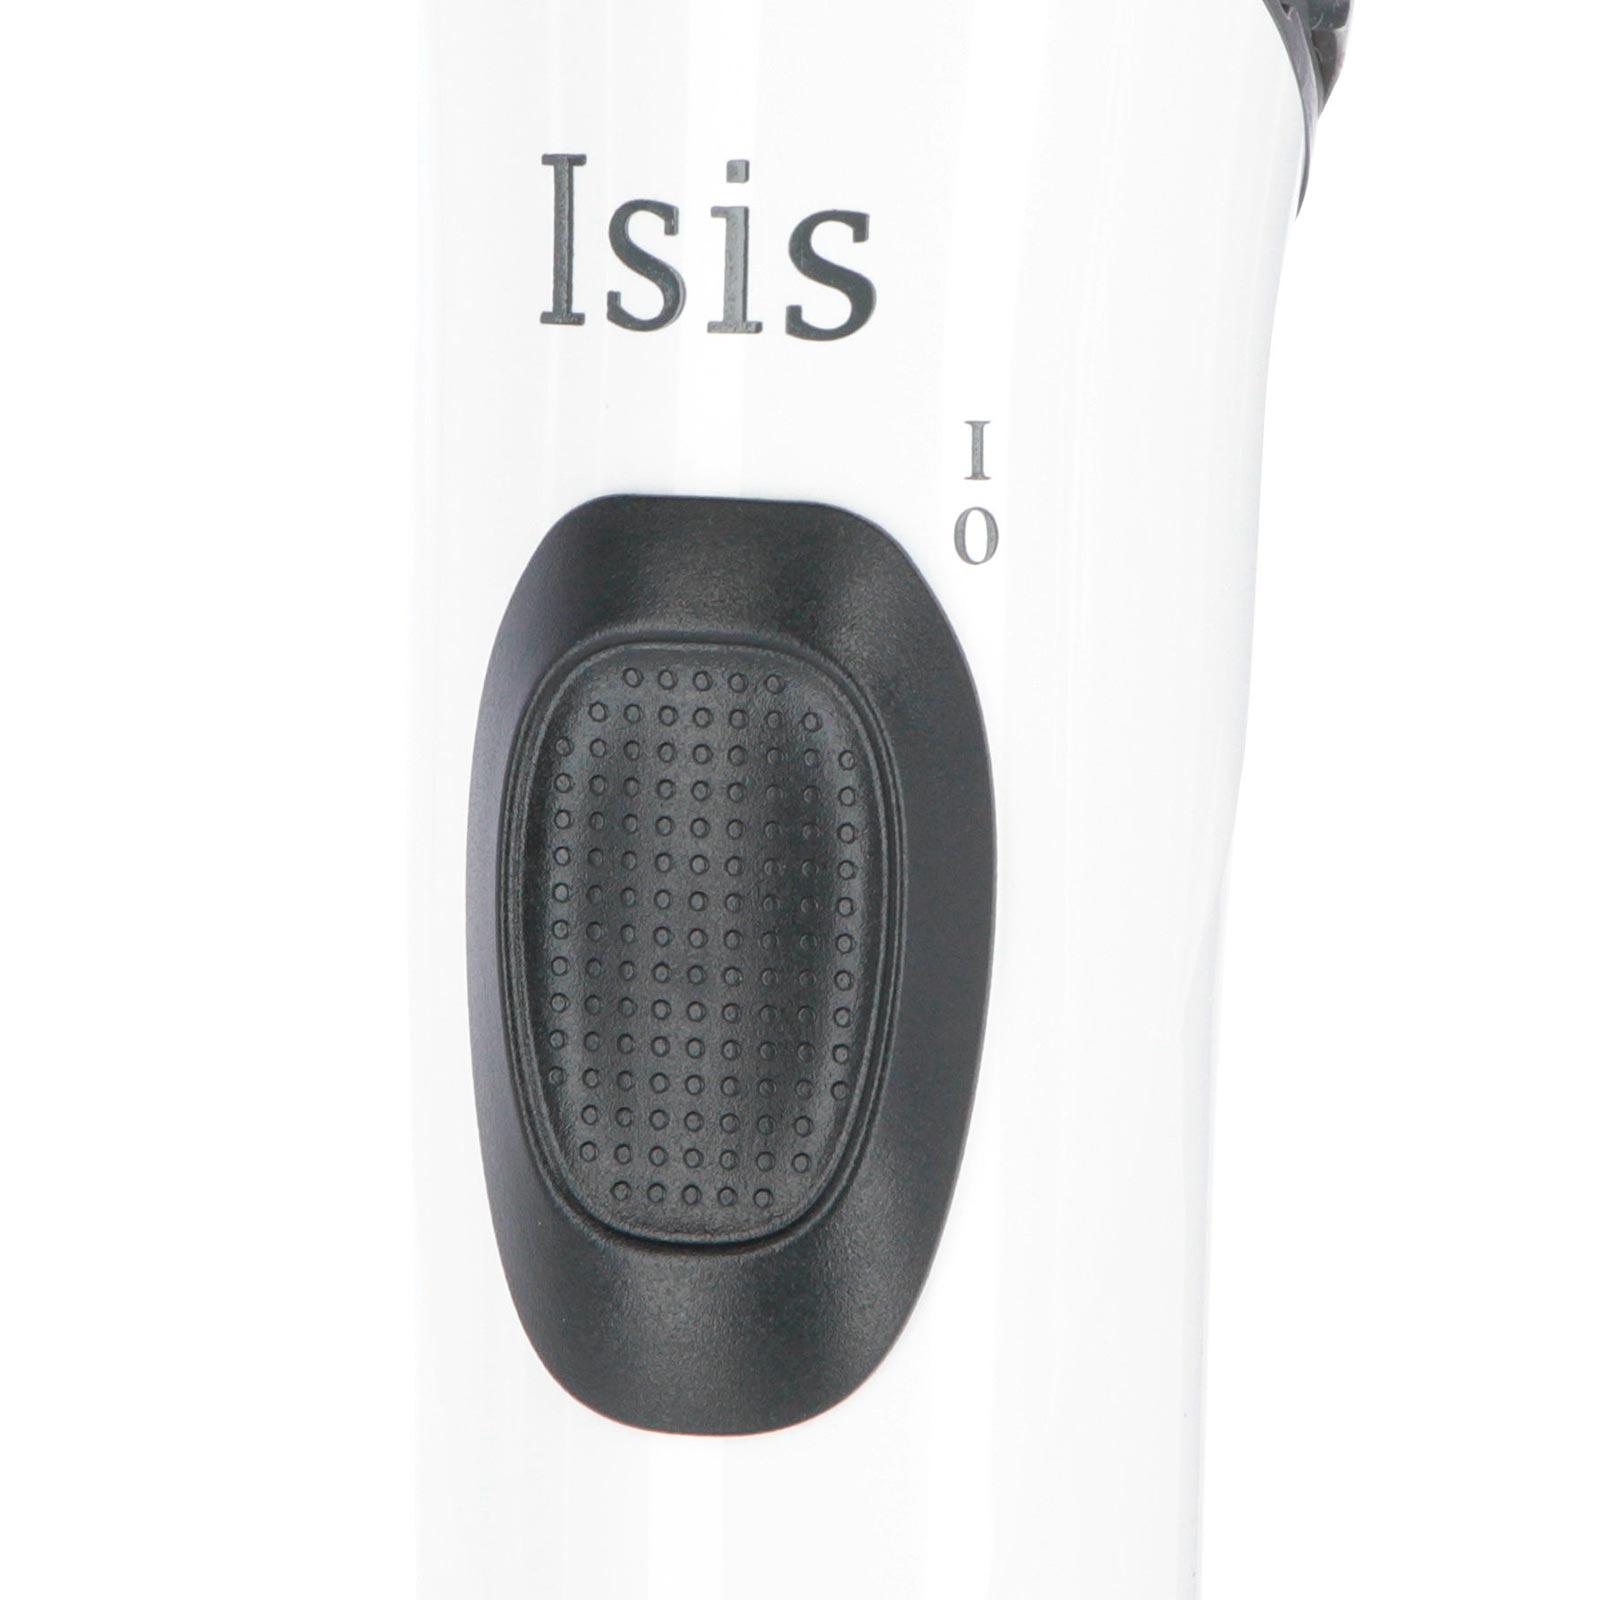 Aesculap Isis akkumulátoros kutya nyírógép